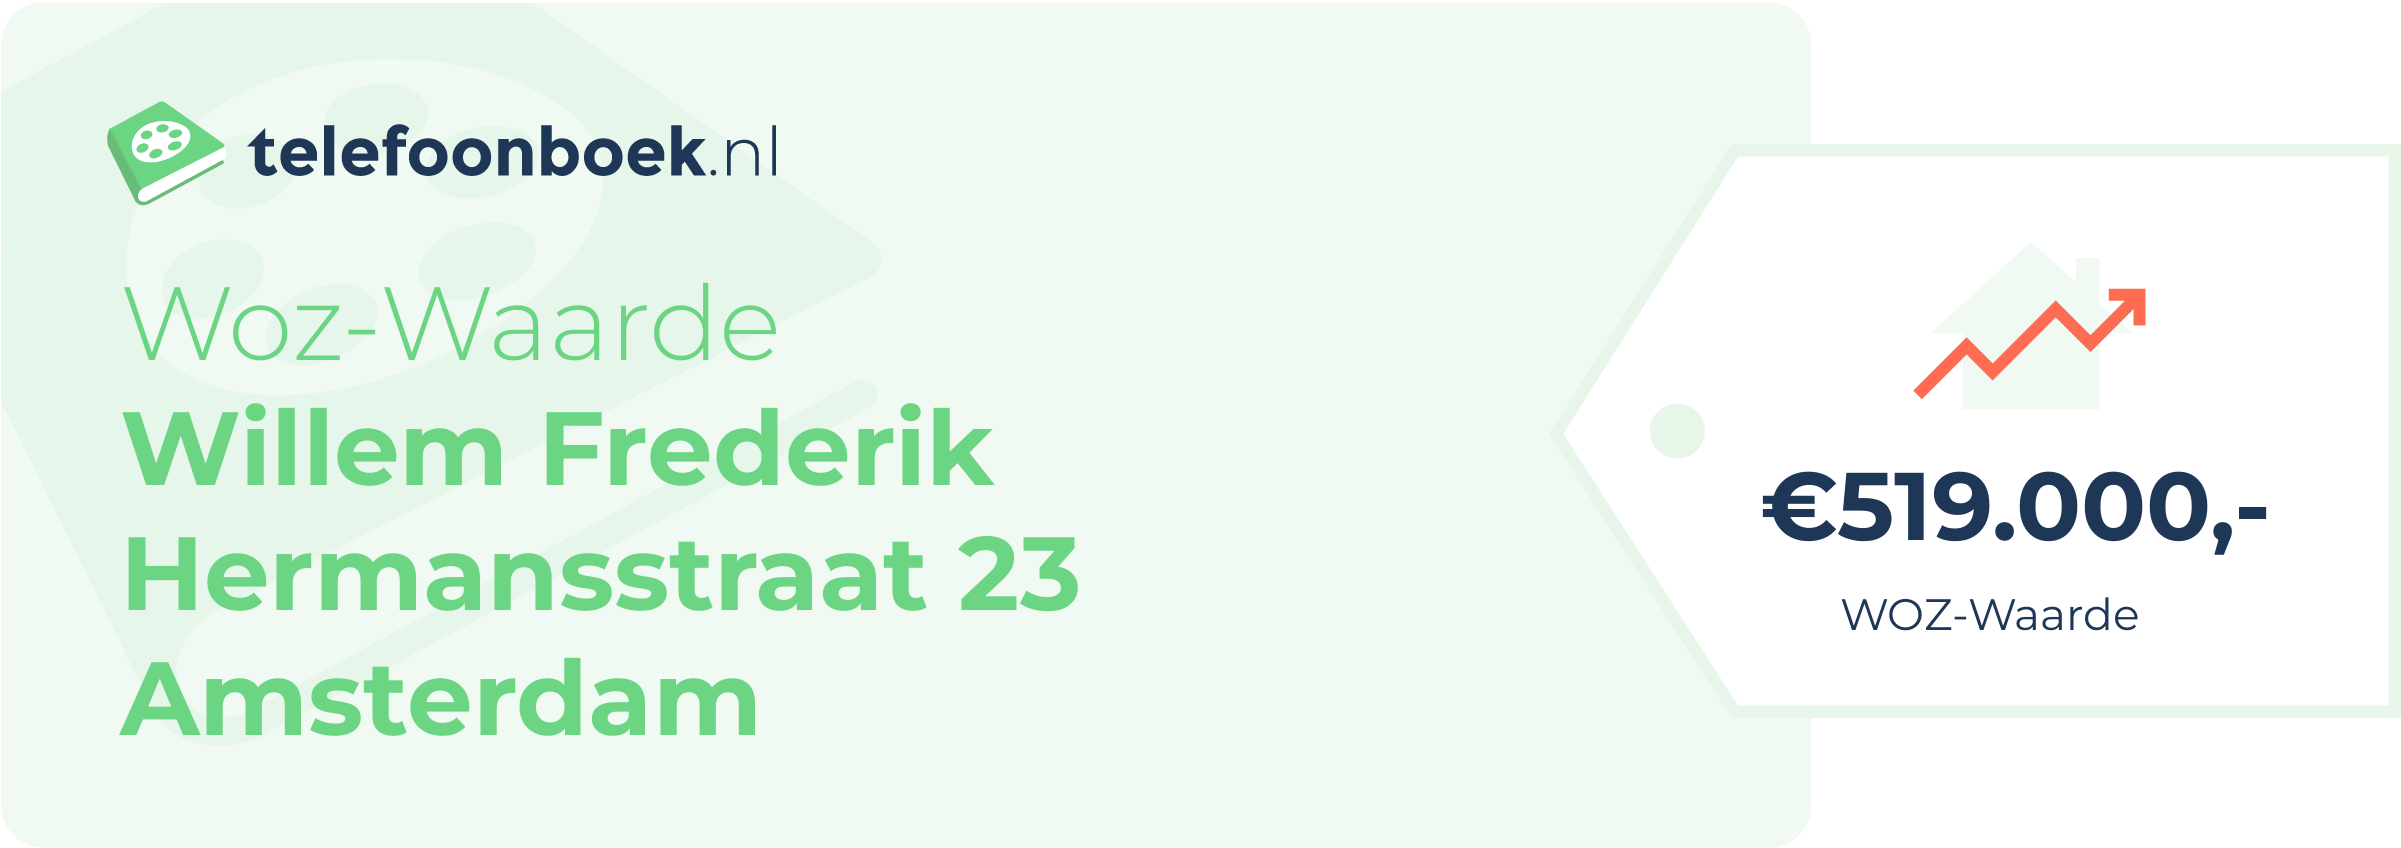 WOZ-waarde Willem Frederik Hermansstraat 23 Amsterdam